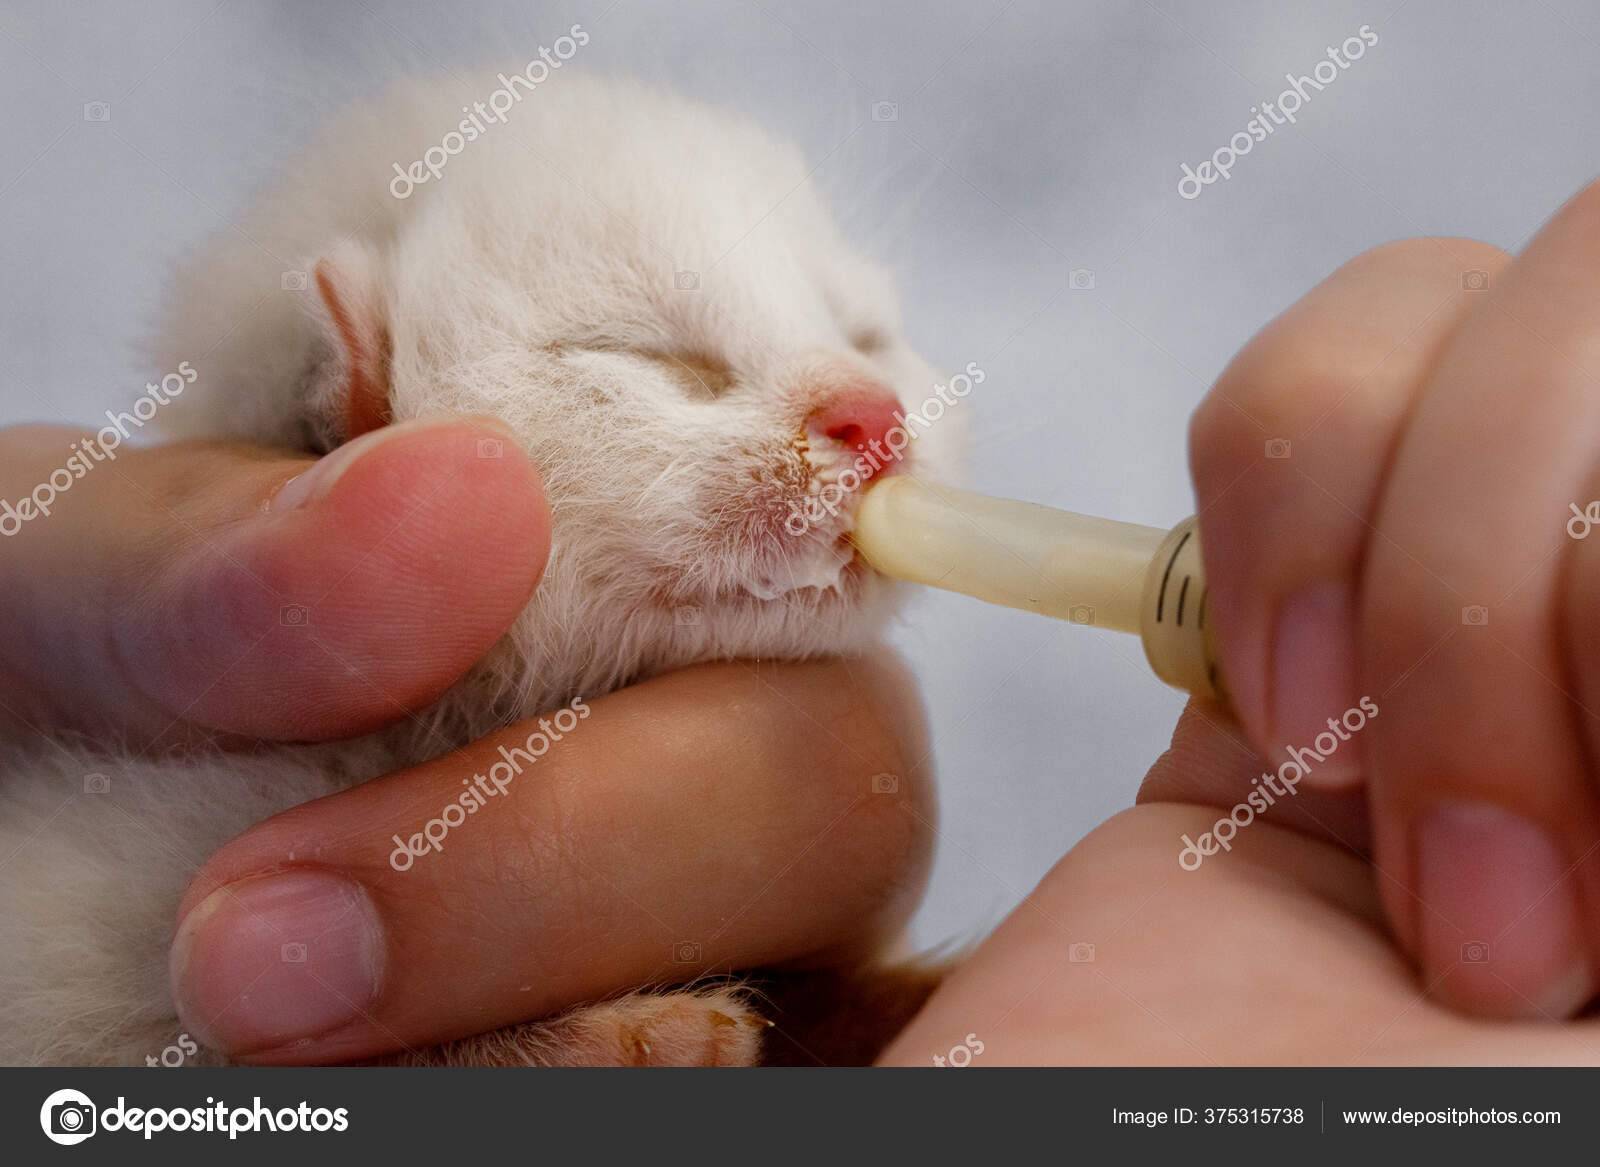 Как кормить кошку из шприца
как кормить кошку из шприца